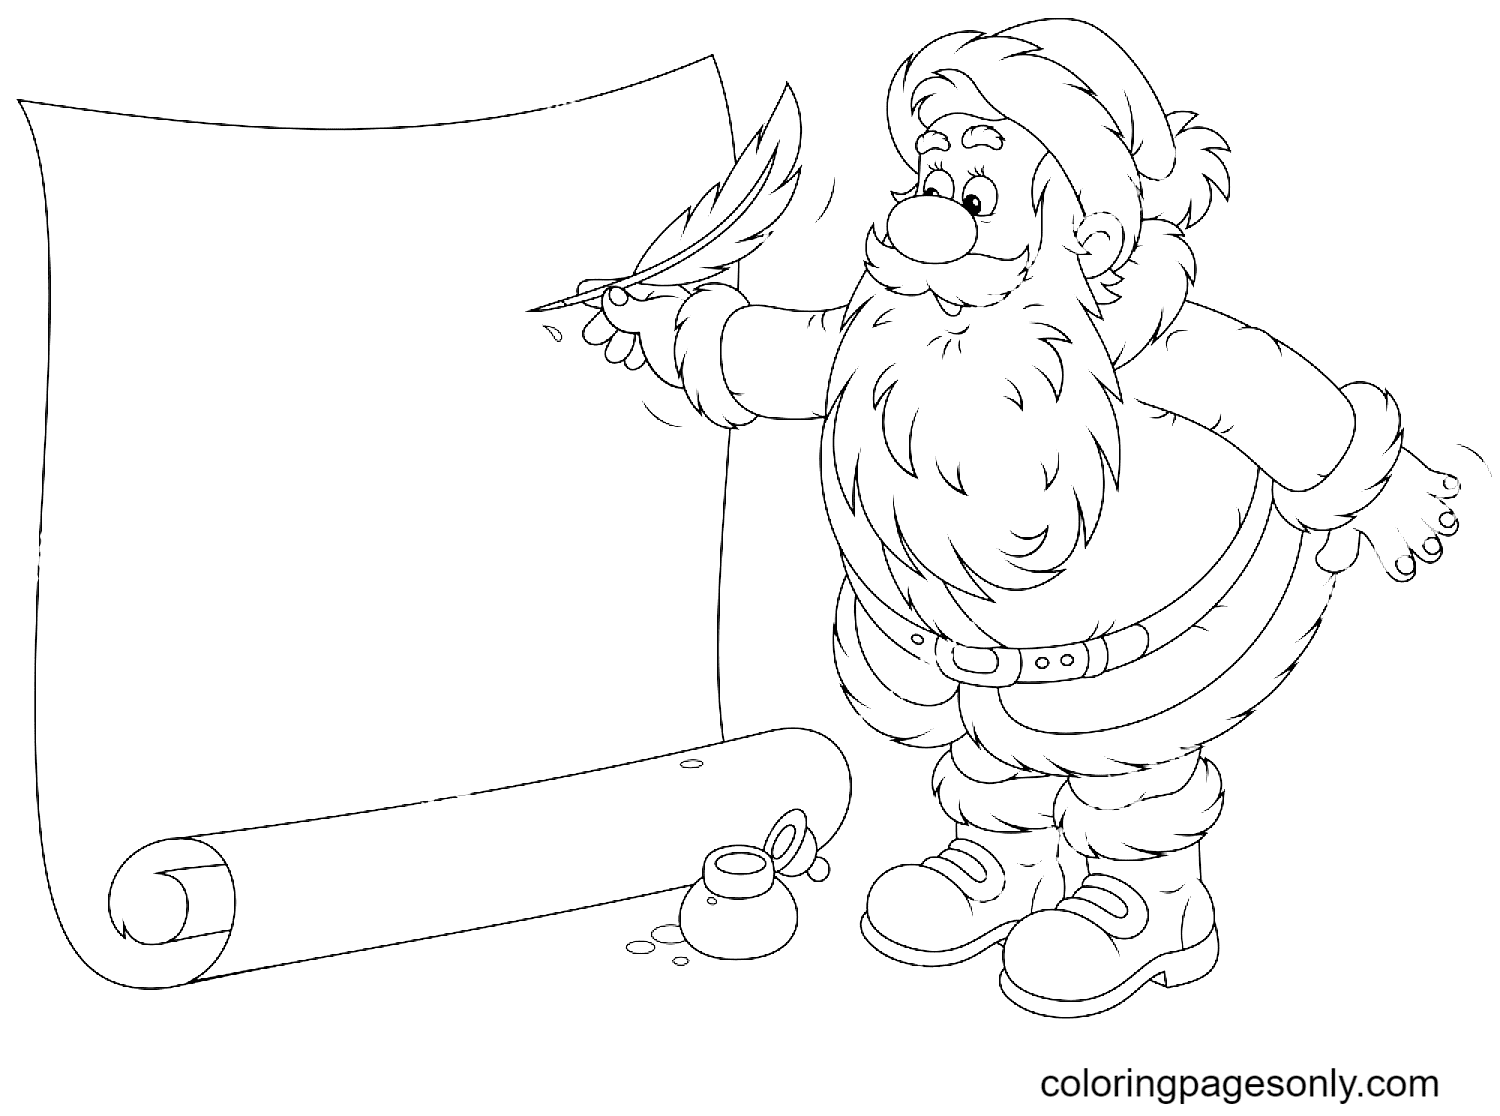 Santa Claus Writing a Holiday Ad Coloring Page